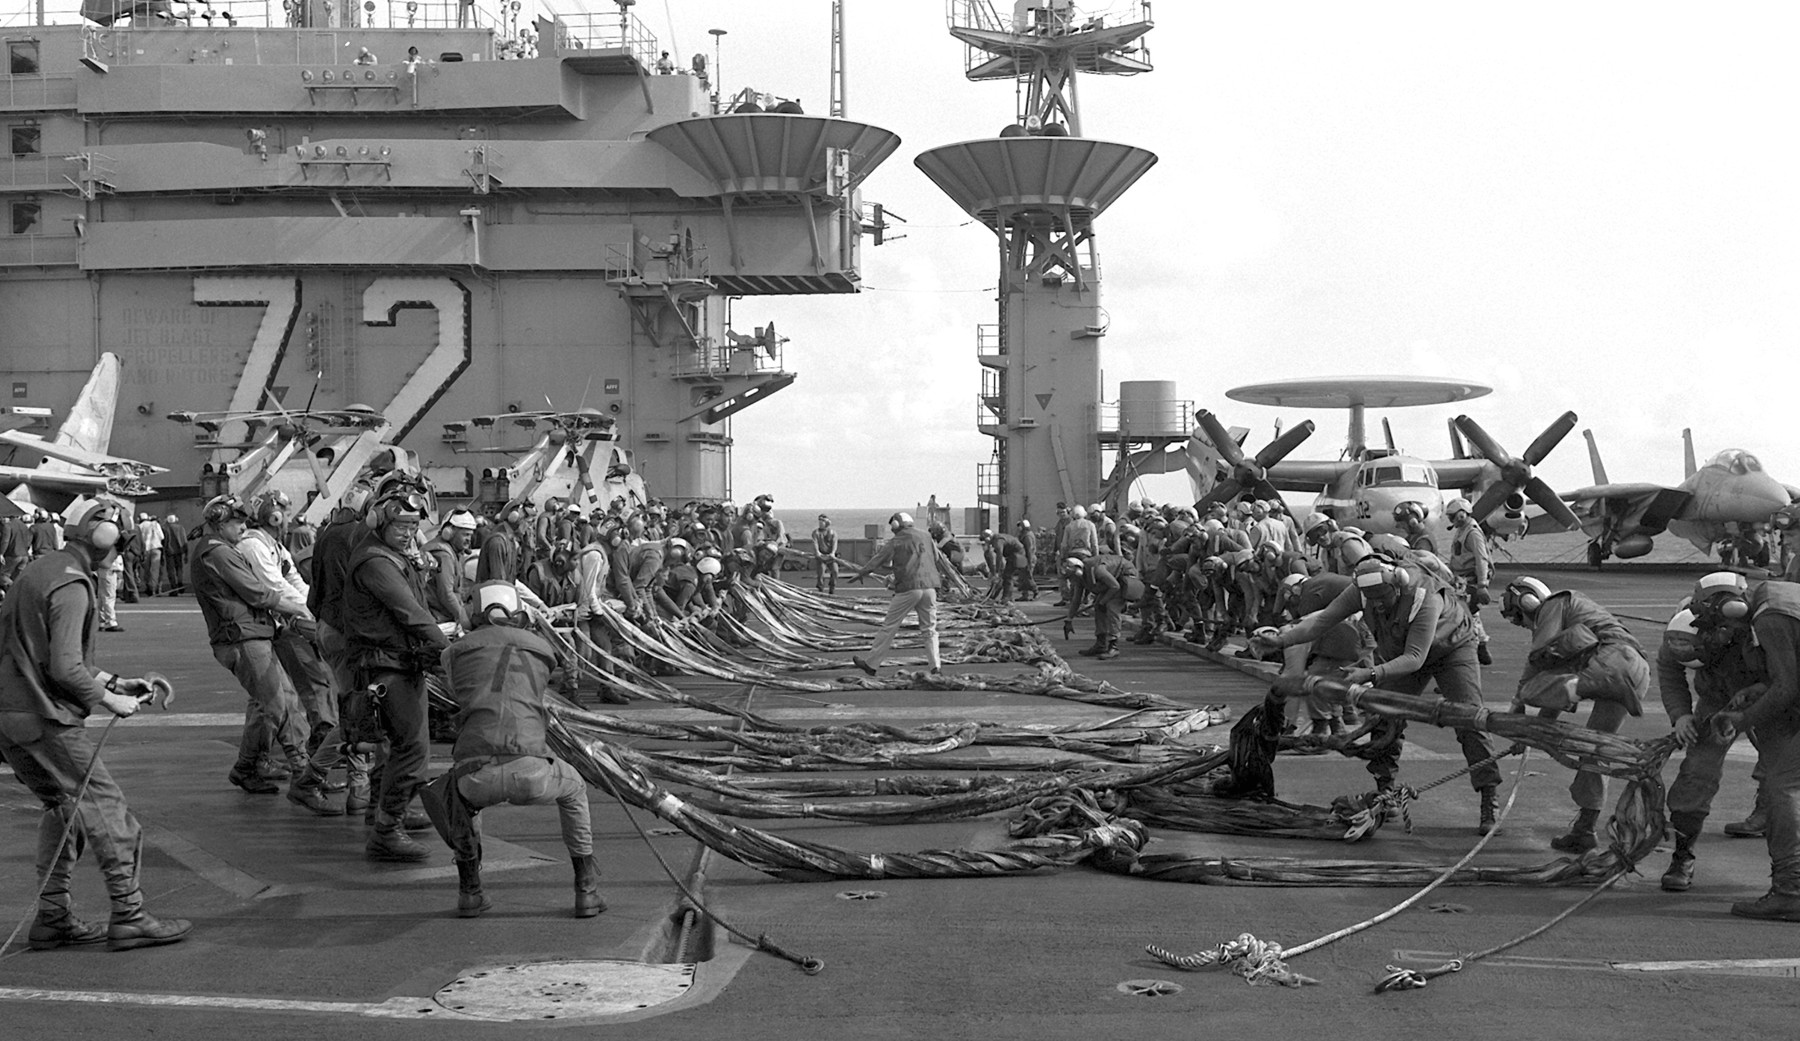 cvn-72 uss abraham lincoln nimitz class aircraft carrier us navy crash barricade 138